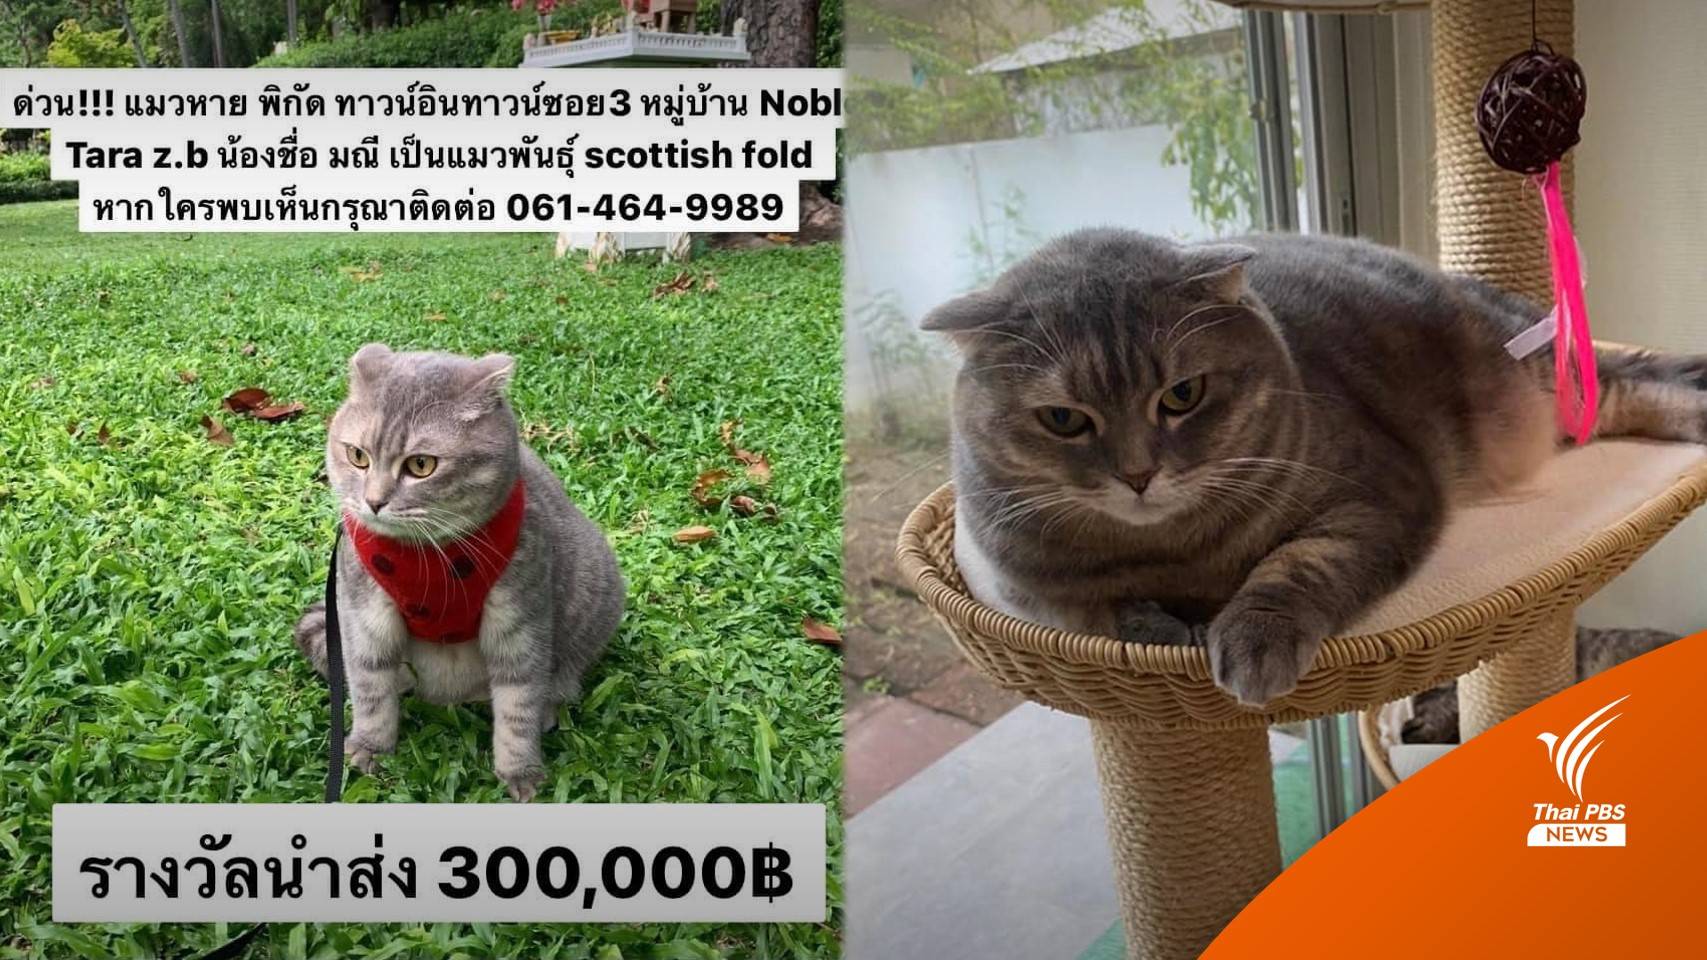 ตามหาแมวหาย "น้องมณี" เจ้าของให้สินน้ำใจ 300,000 บาท